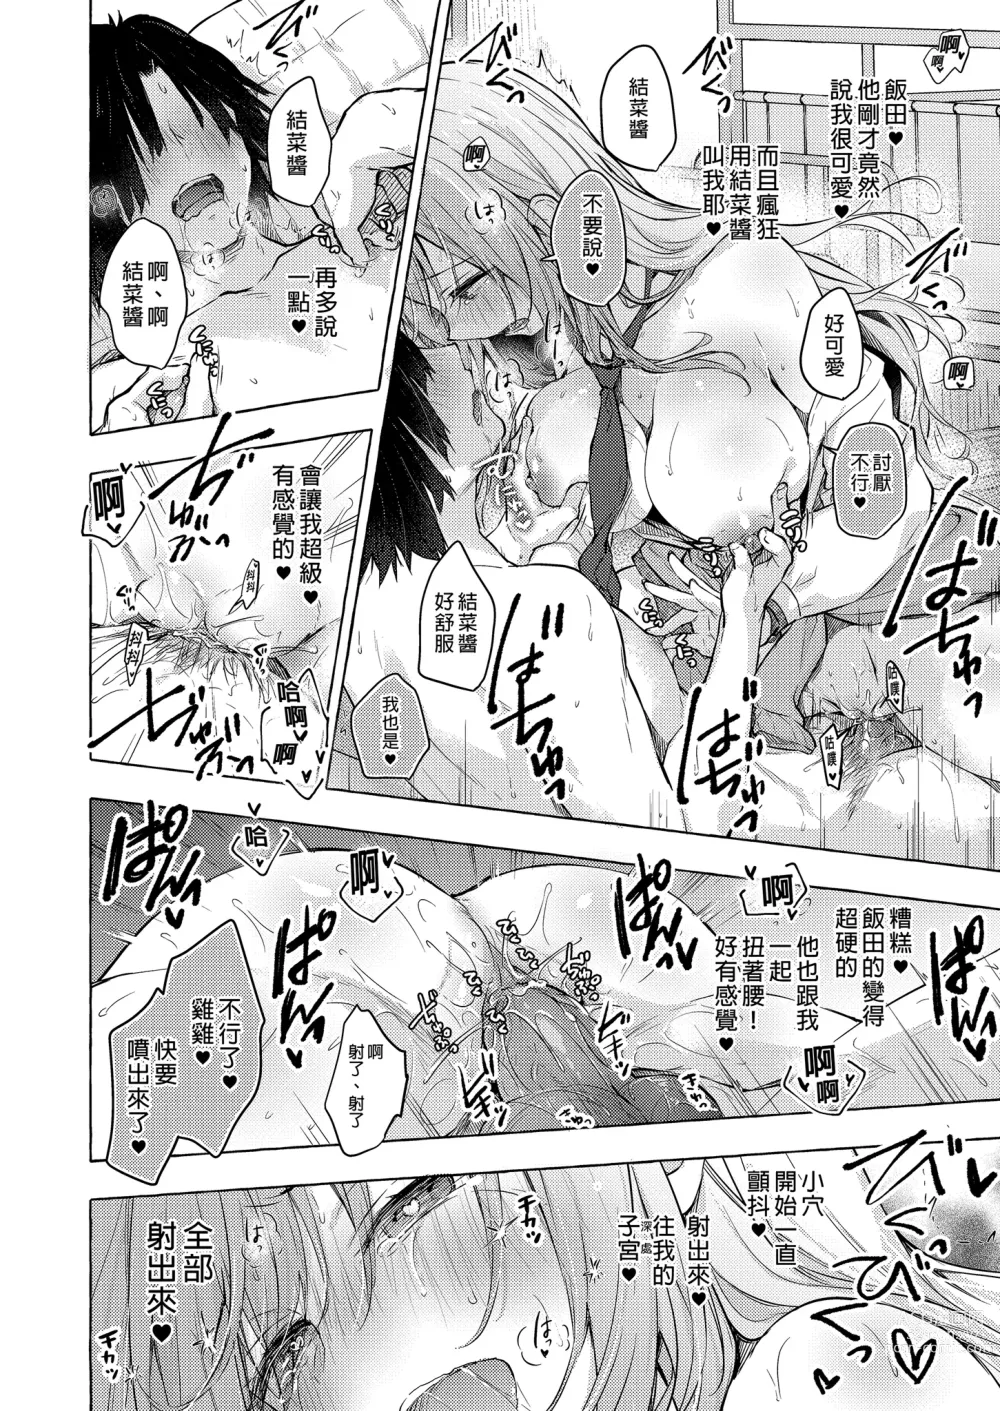 Page 22 of doujinshi 和辣妹結菜醬一起H 4